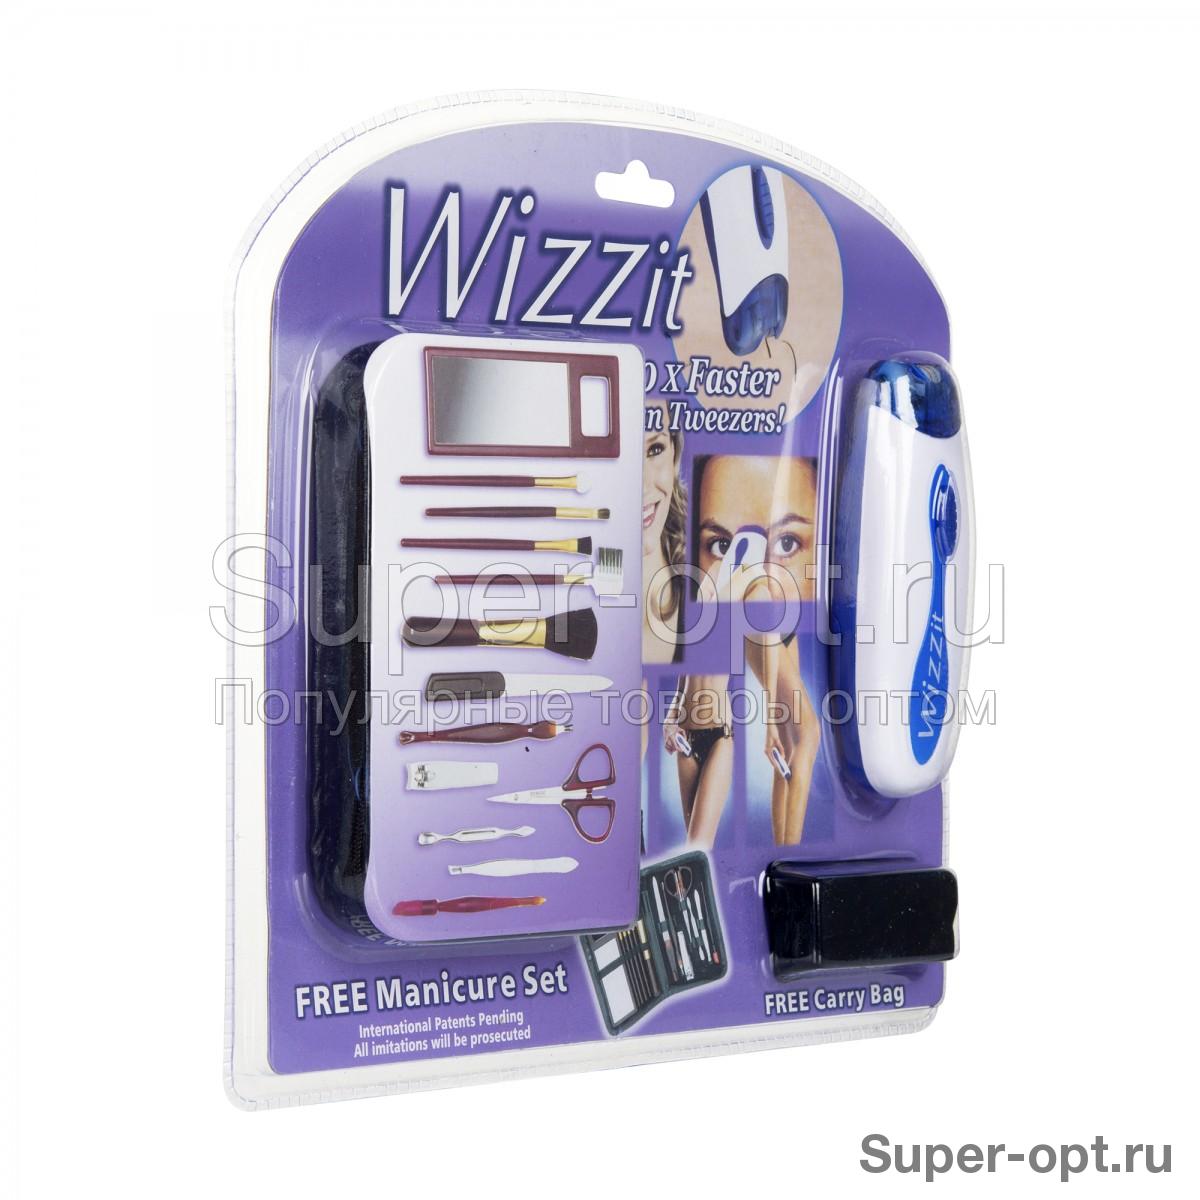  Эпилятор Wizzit Free Manicure Set с маникюрным набором